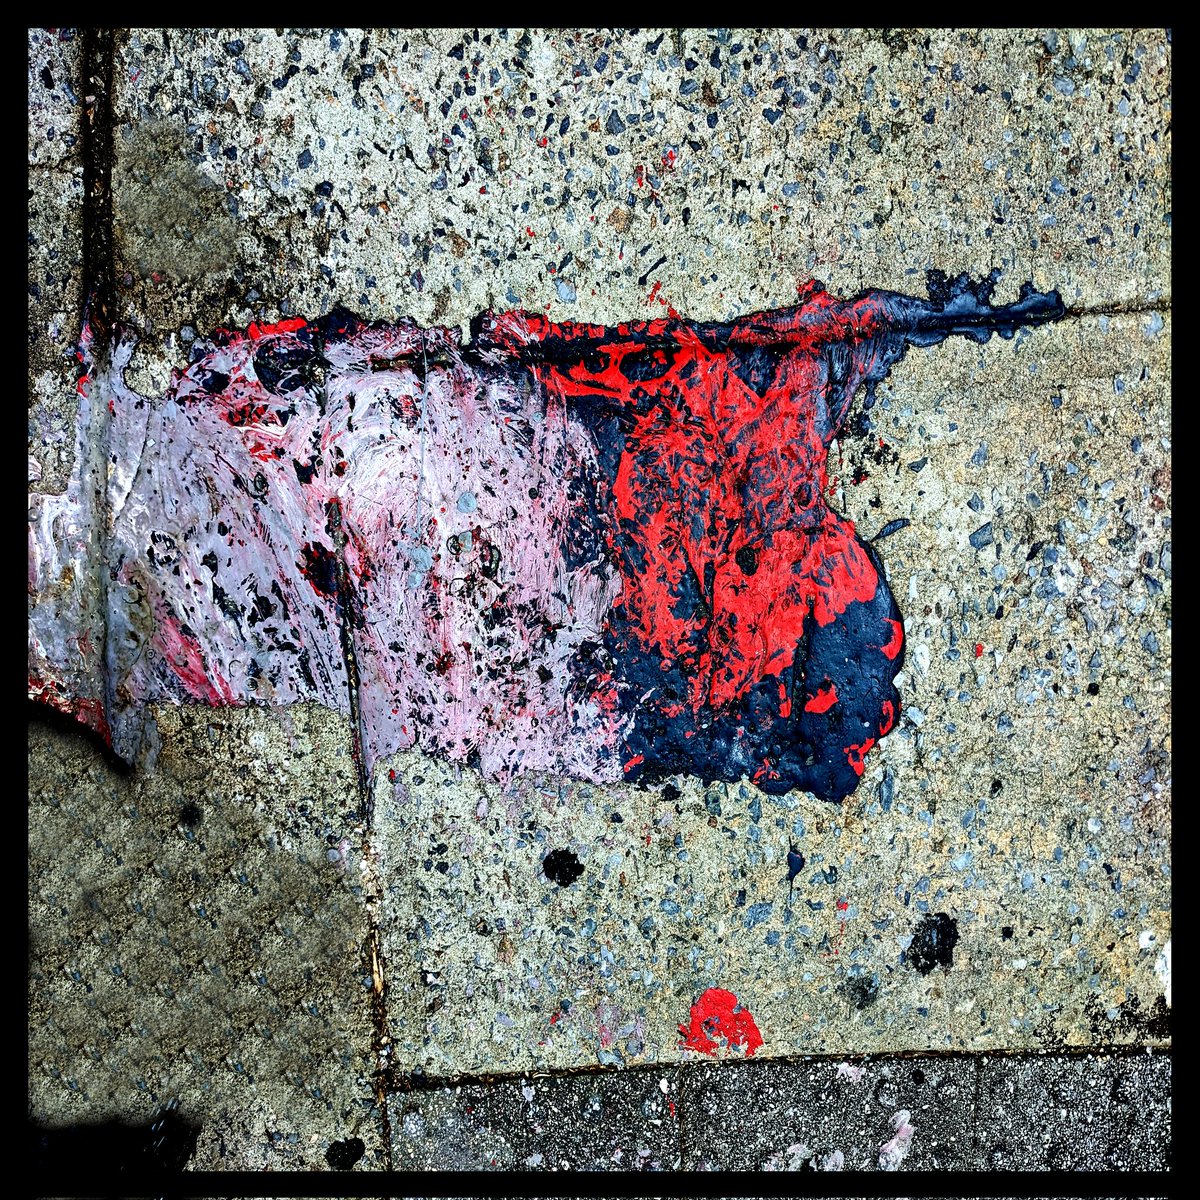 #manhattan #sidewalk #abstractart #art #newyorkcity #newyork